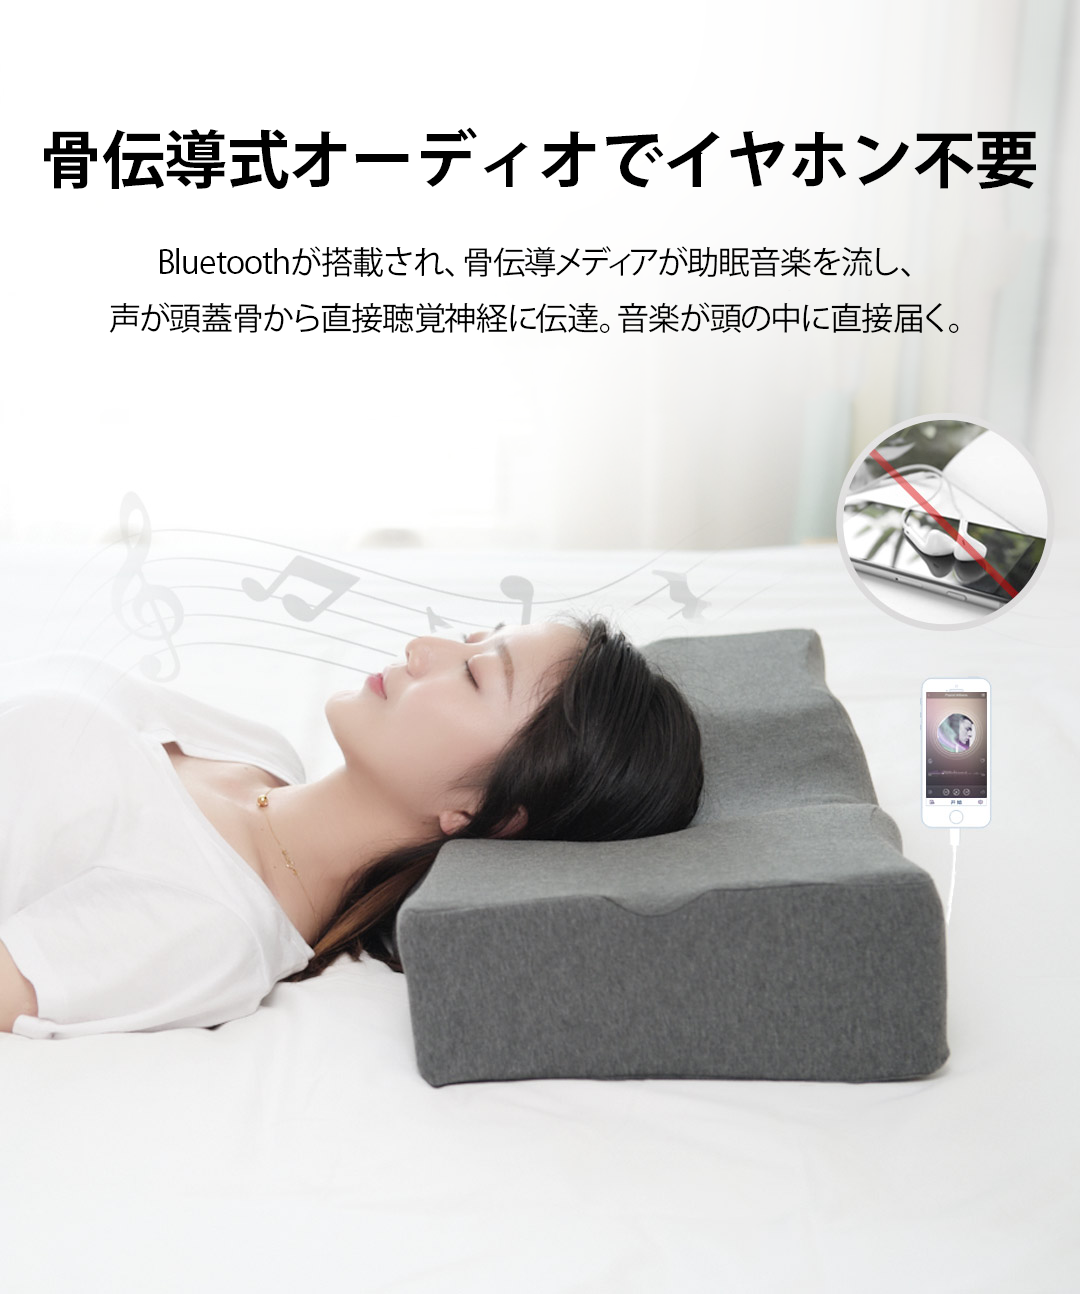 音楽が流れる枕 アプリ連動で睡眠をサポートする次世代スマート枕 Appbank